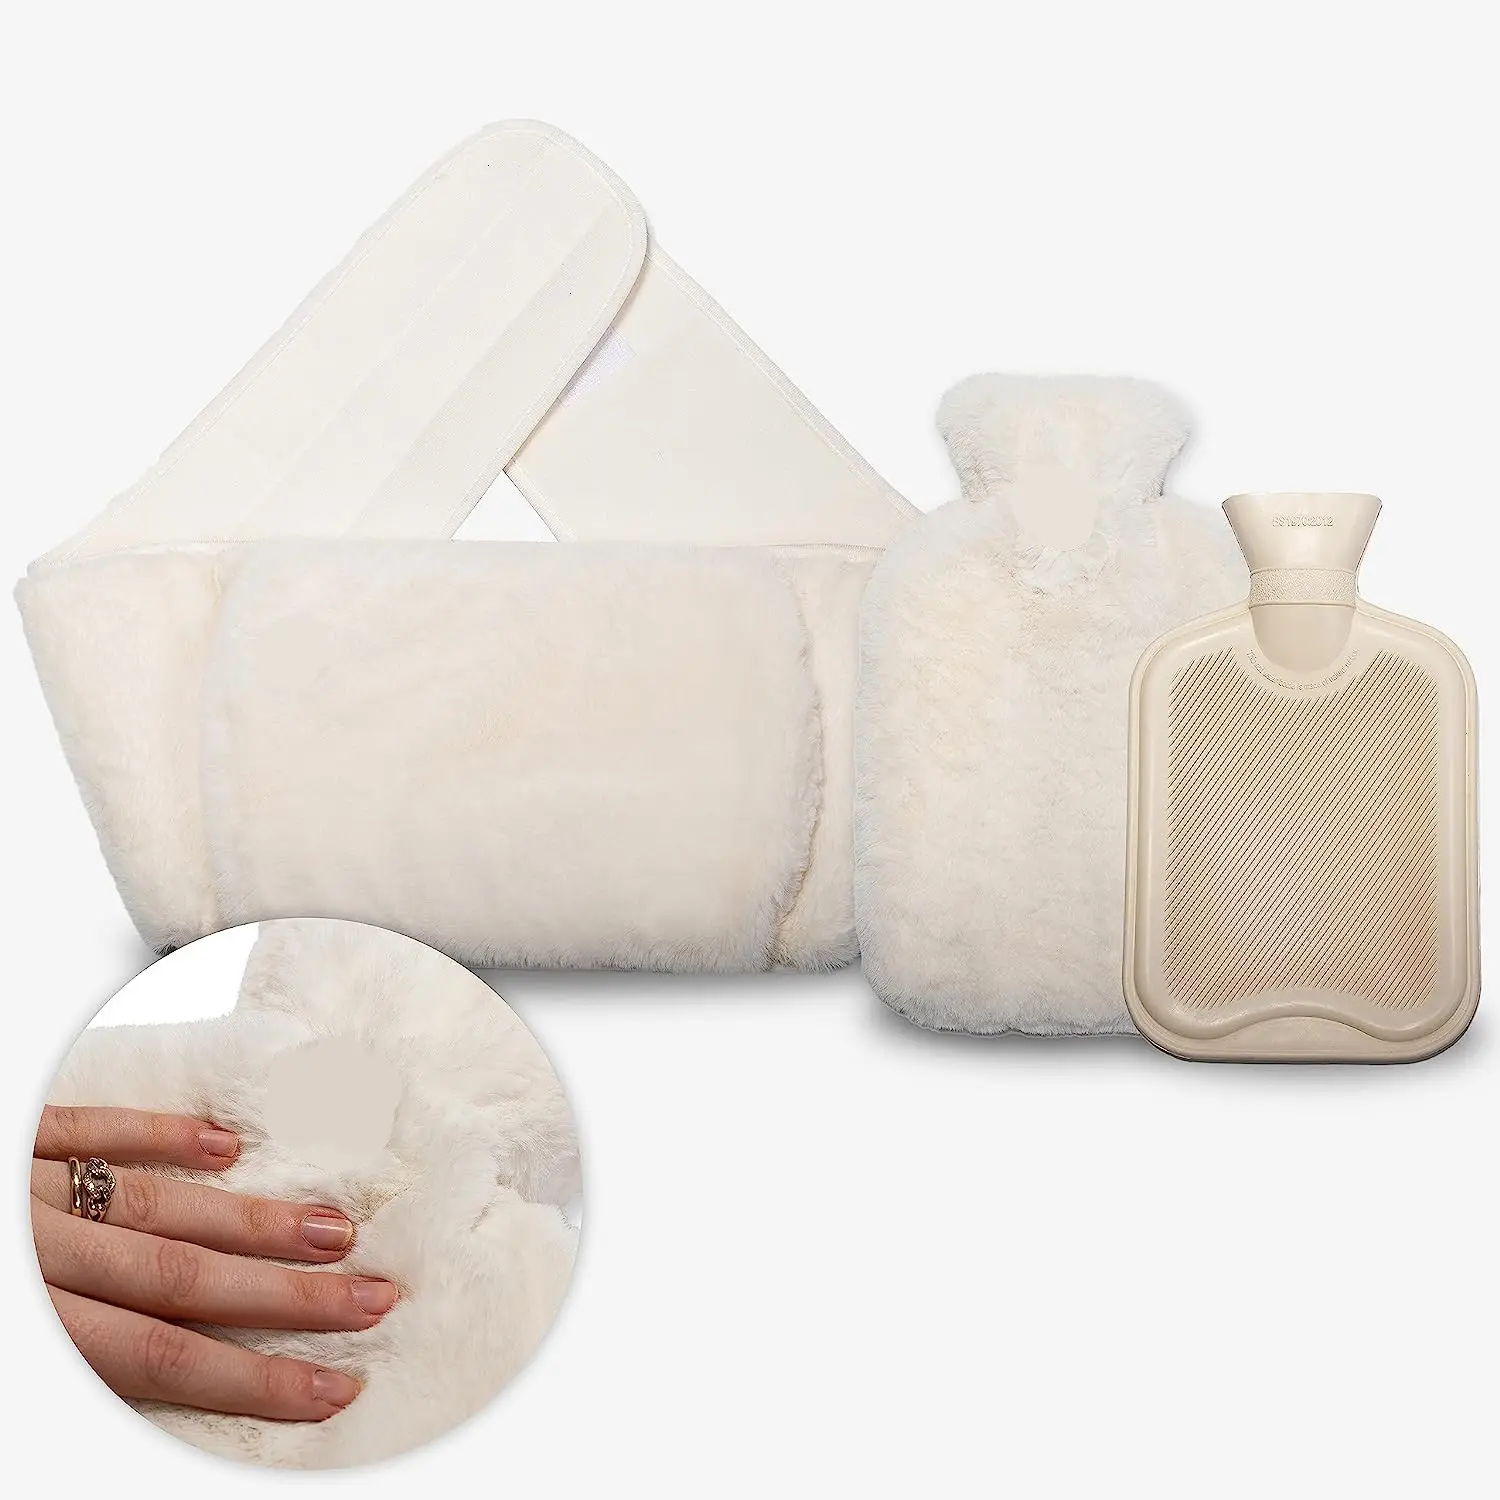 Bel kapağı ile yüksek kaliteli peluş kürk el ısıtıcı bel kemeri stil sıcak su torbaları şişe